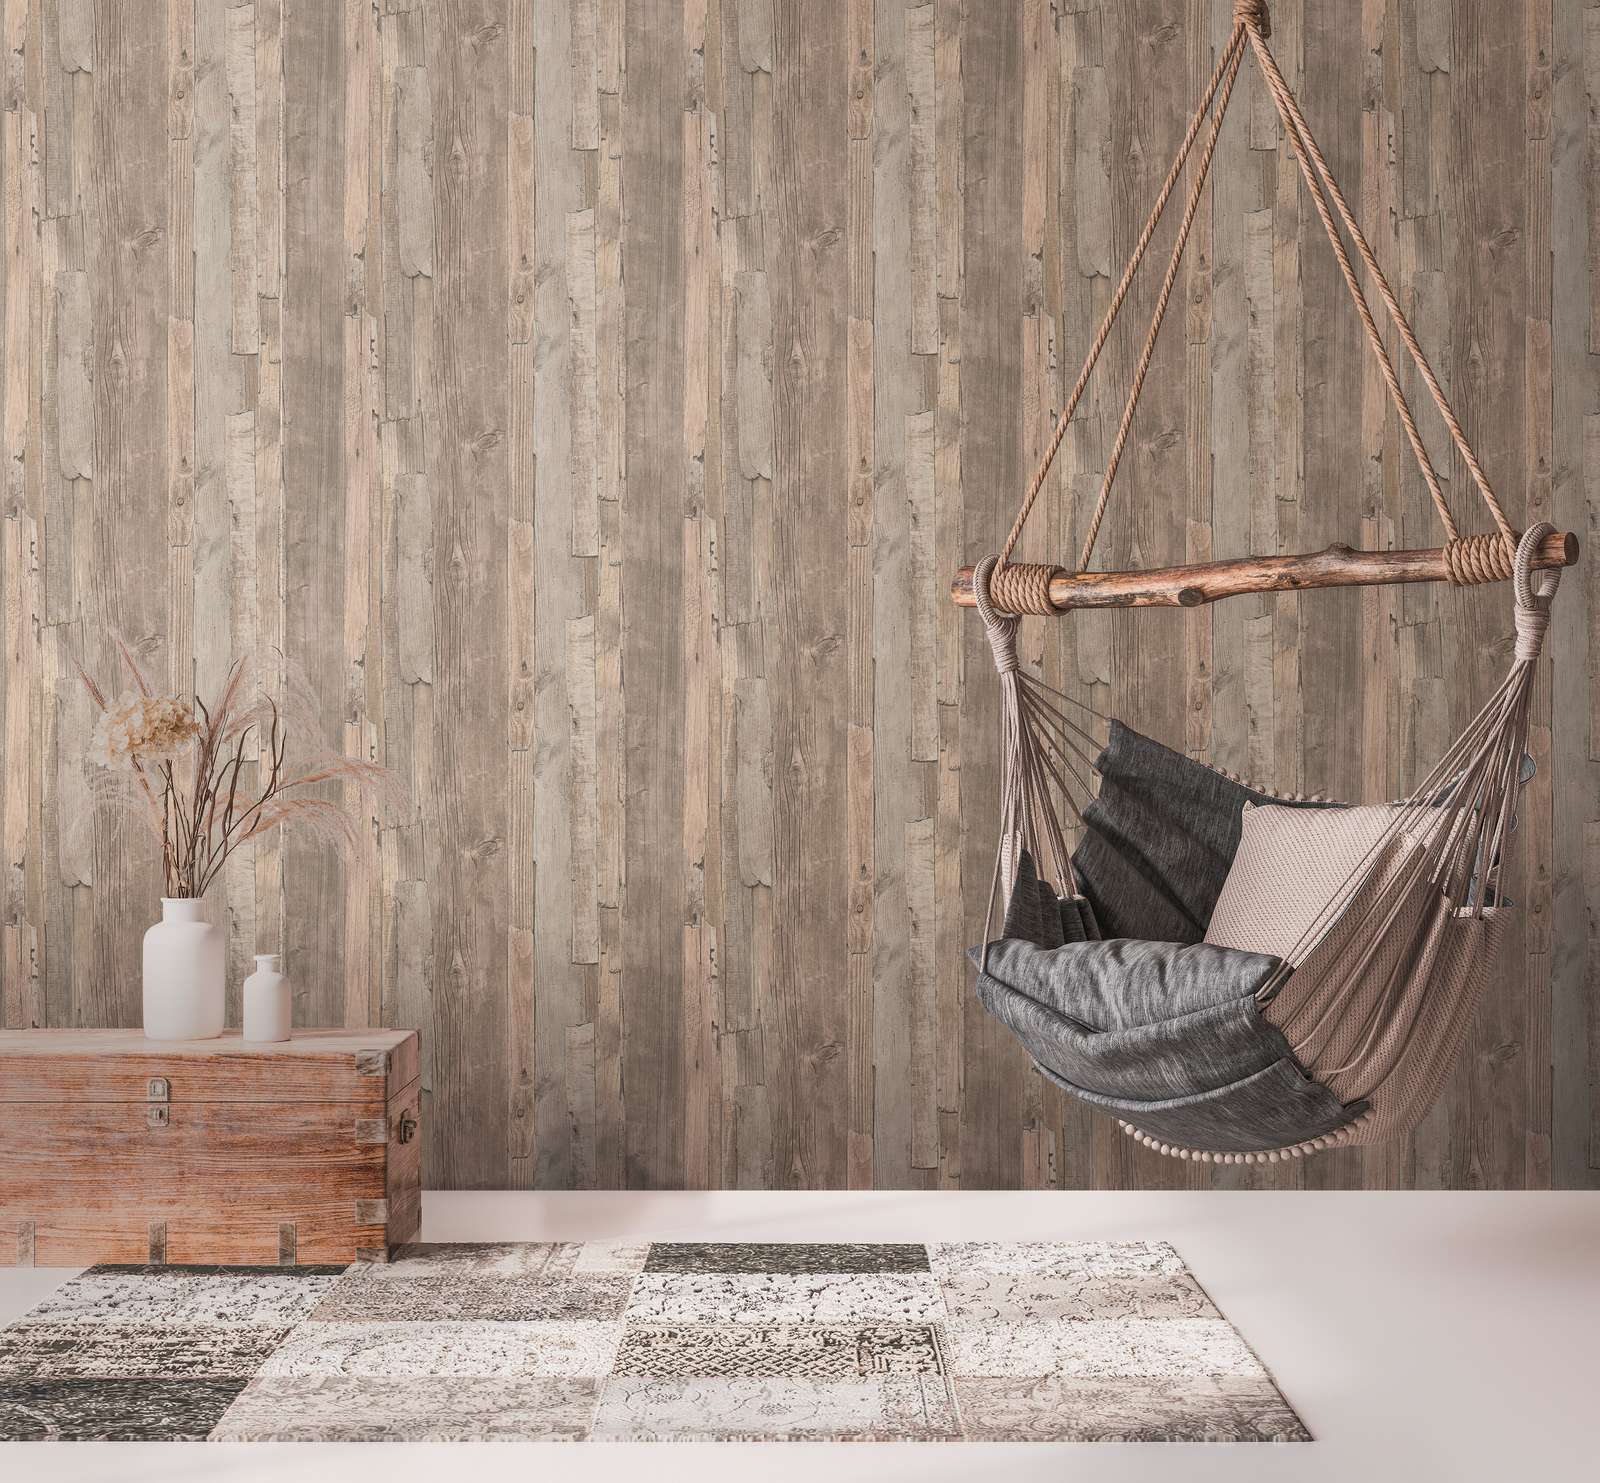             Behang met plankenpatroon, hout in gebruikt design - beige, bruin
        